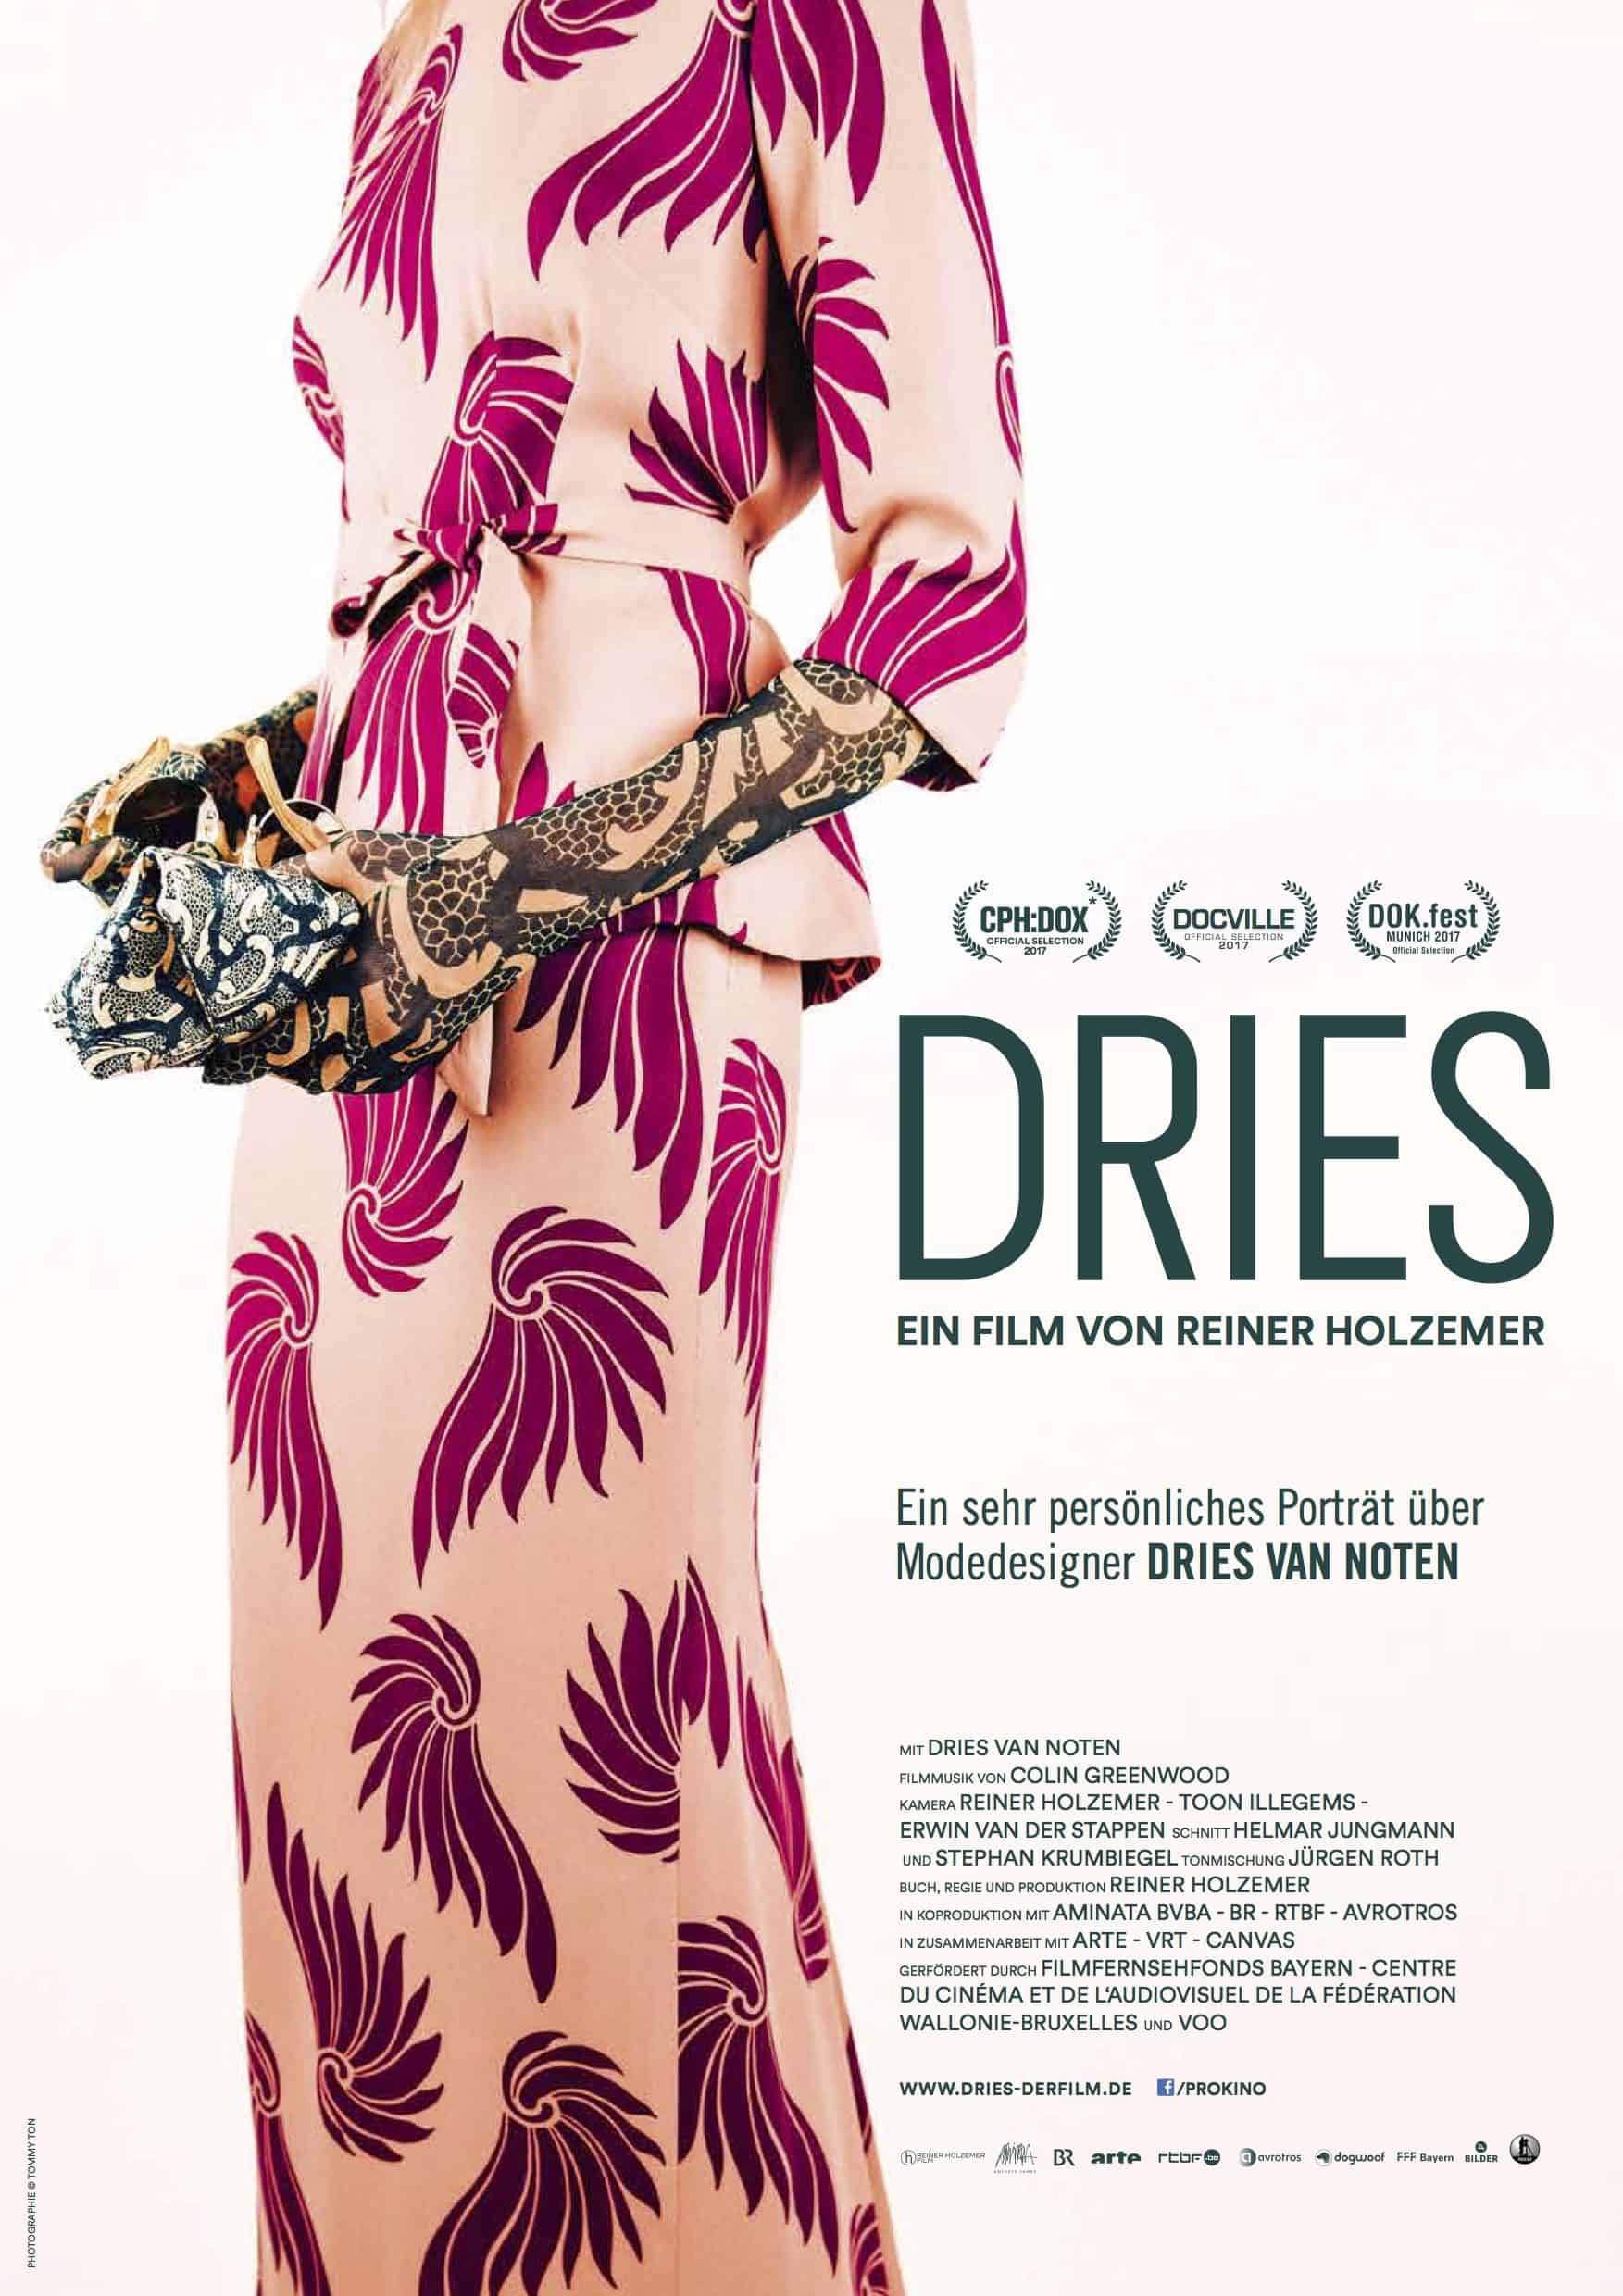 Dries (2017) credits IMDB